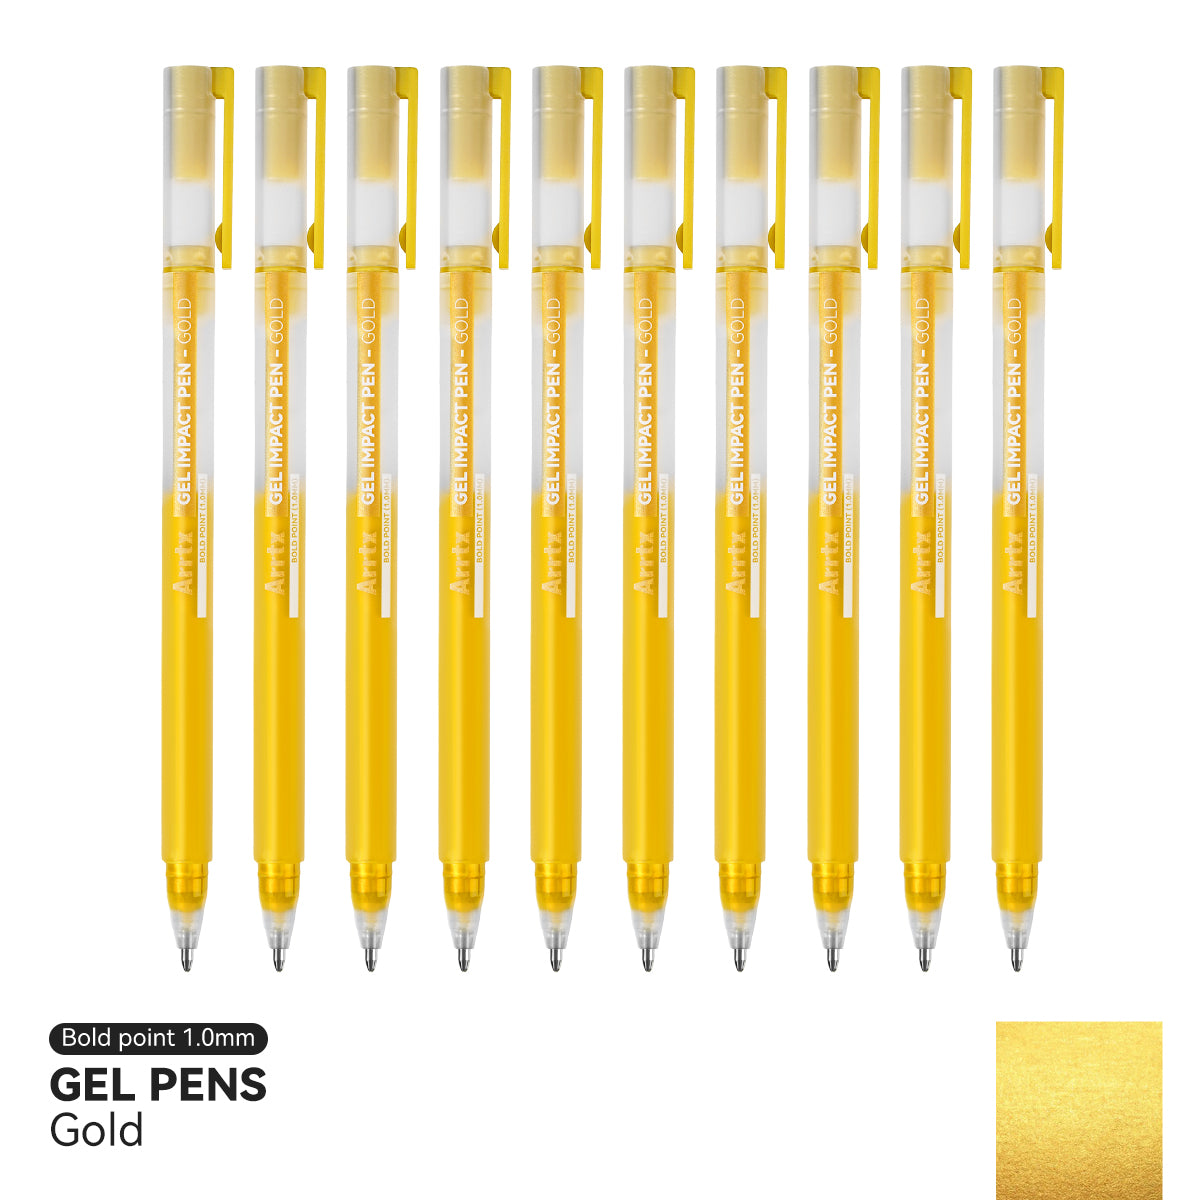 Arrtx Gel Pens Gold Color 10 Pack Ink Pens Large Capacity Ink